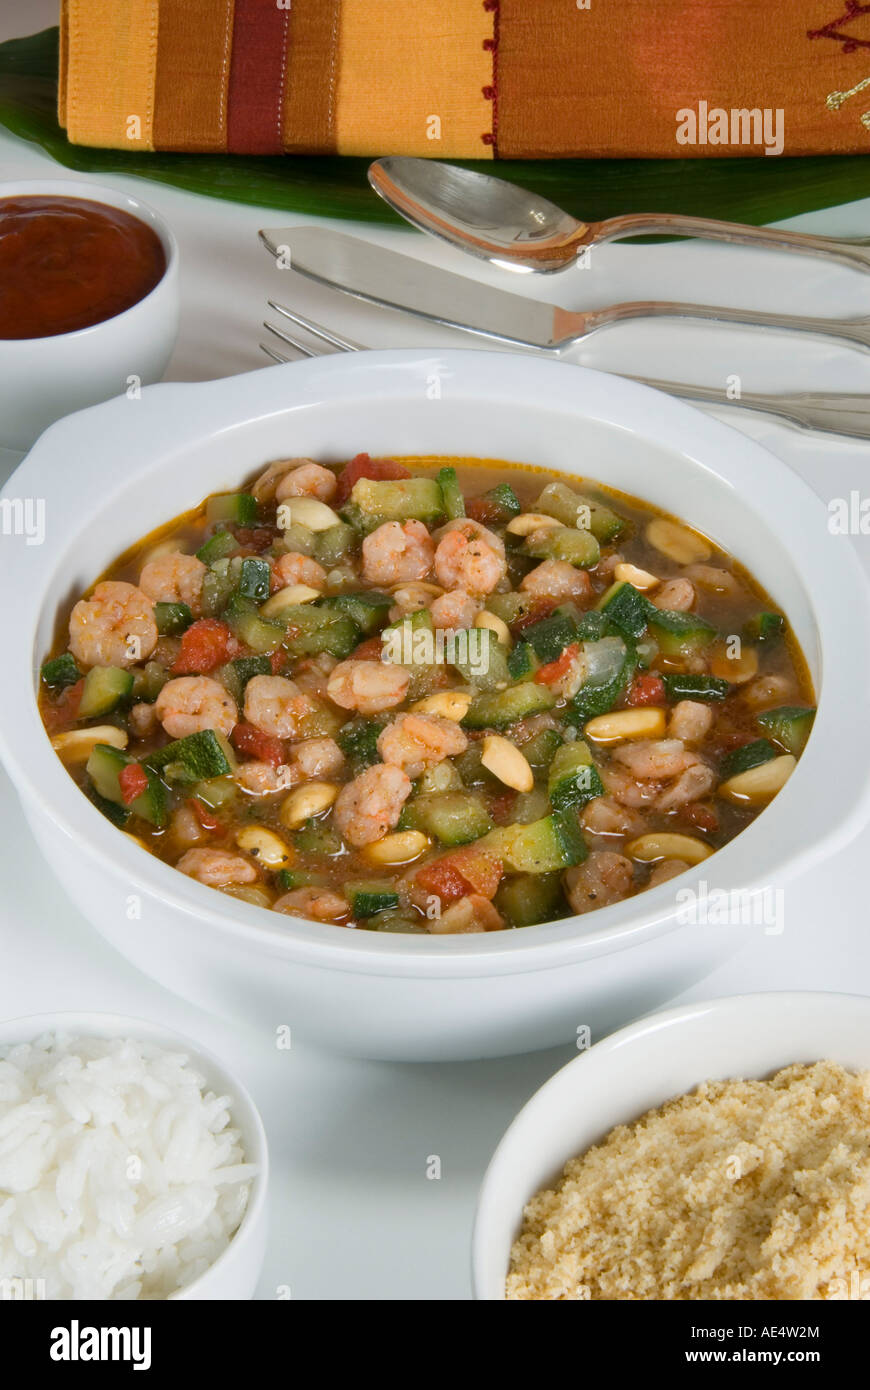 La nourriture brésilienne, caruru de camarao (soupe de légumes aux crevettes), Brésil, Amérique du Sud Banque D'Images